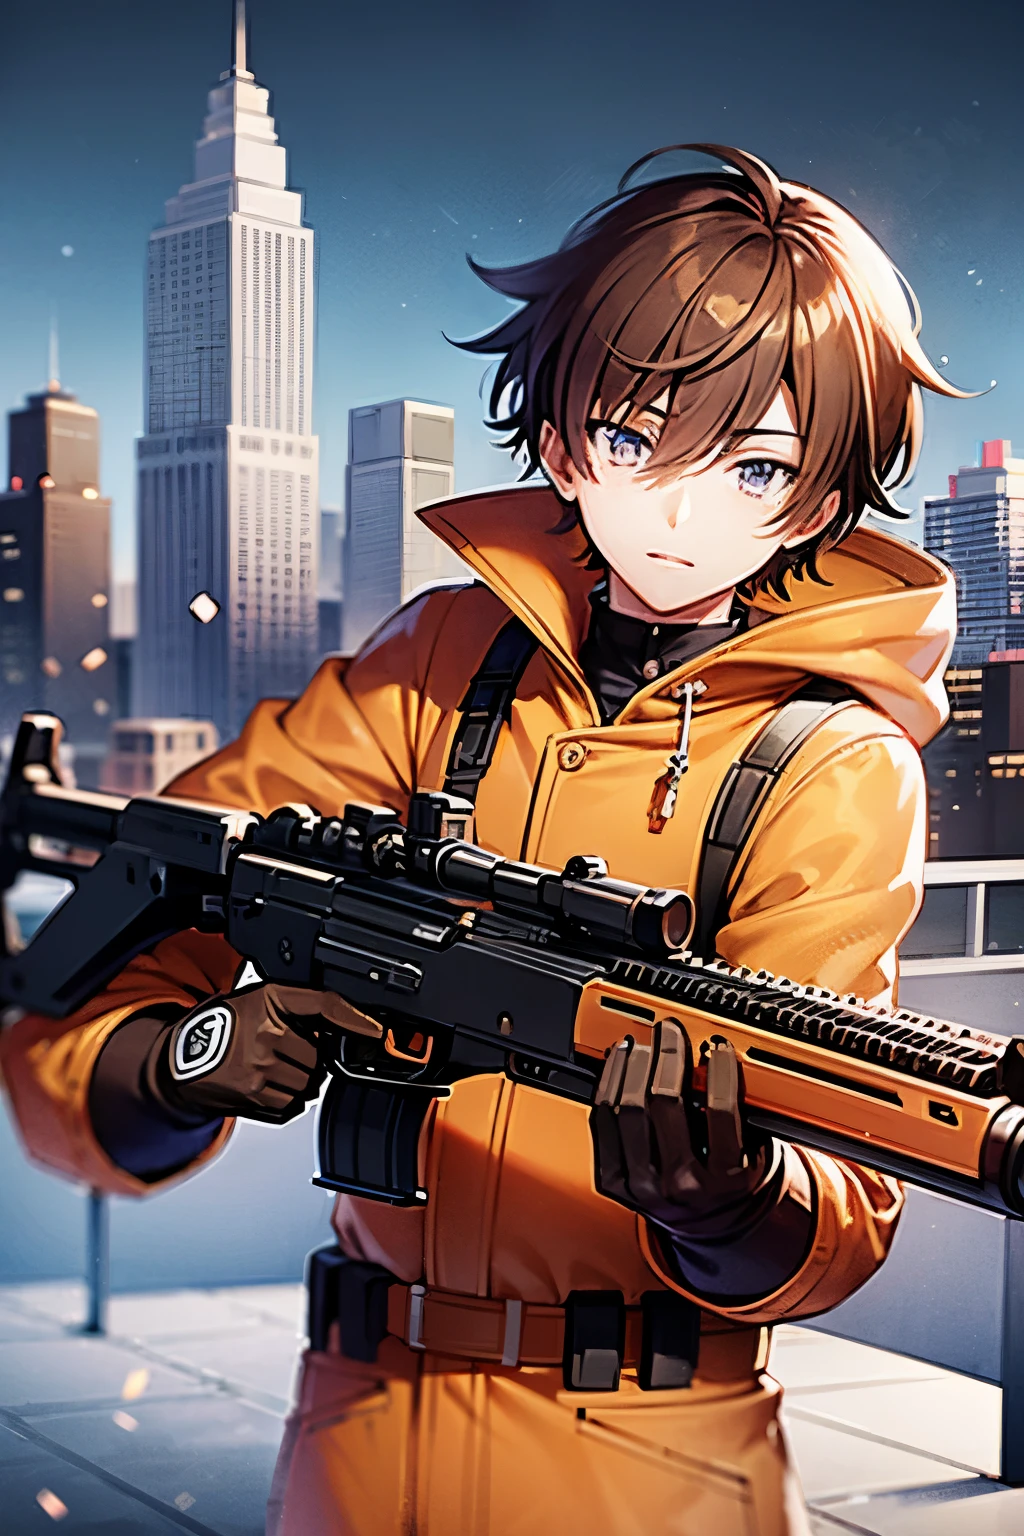 Anime-Serie, Anime-Serie style, Schicksalsstil, junger Mann, Orangefarbener Mantel, Gewehr mit ACOG, in Deckung gehen, bei einer Schießerei, braune Haare, blaue Augen, Verschneite Stadt, Meisterwerk
